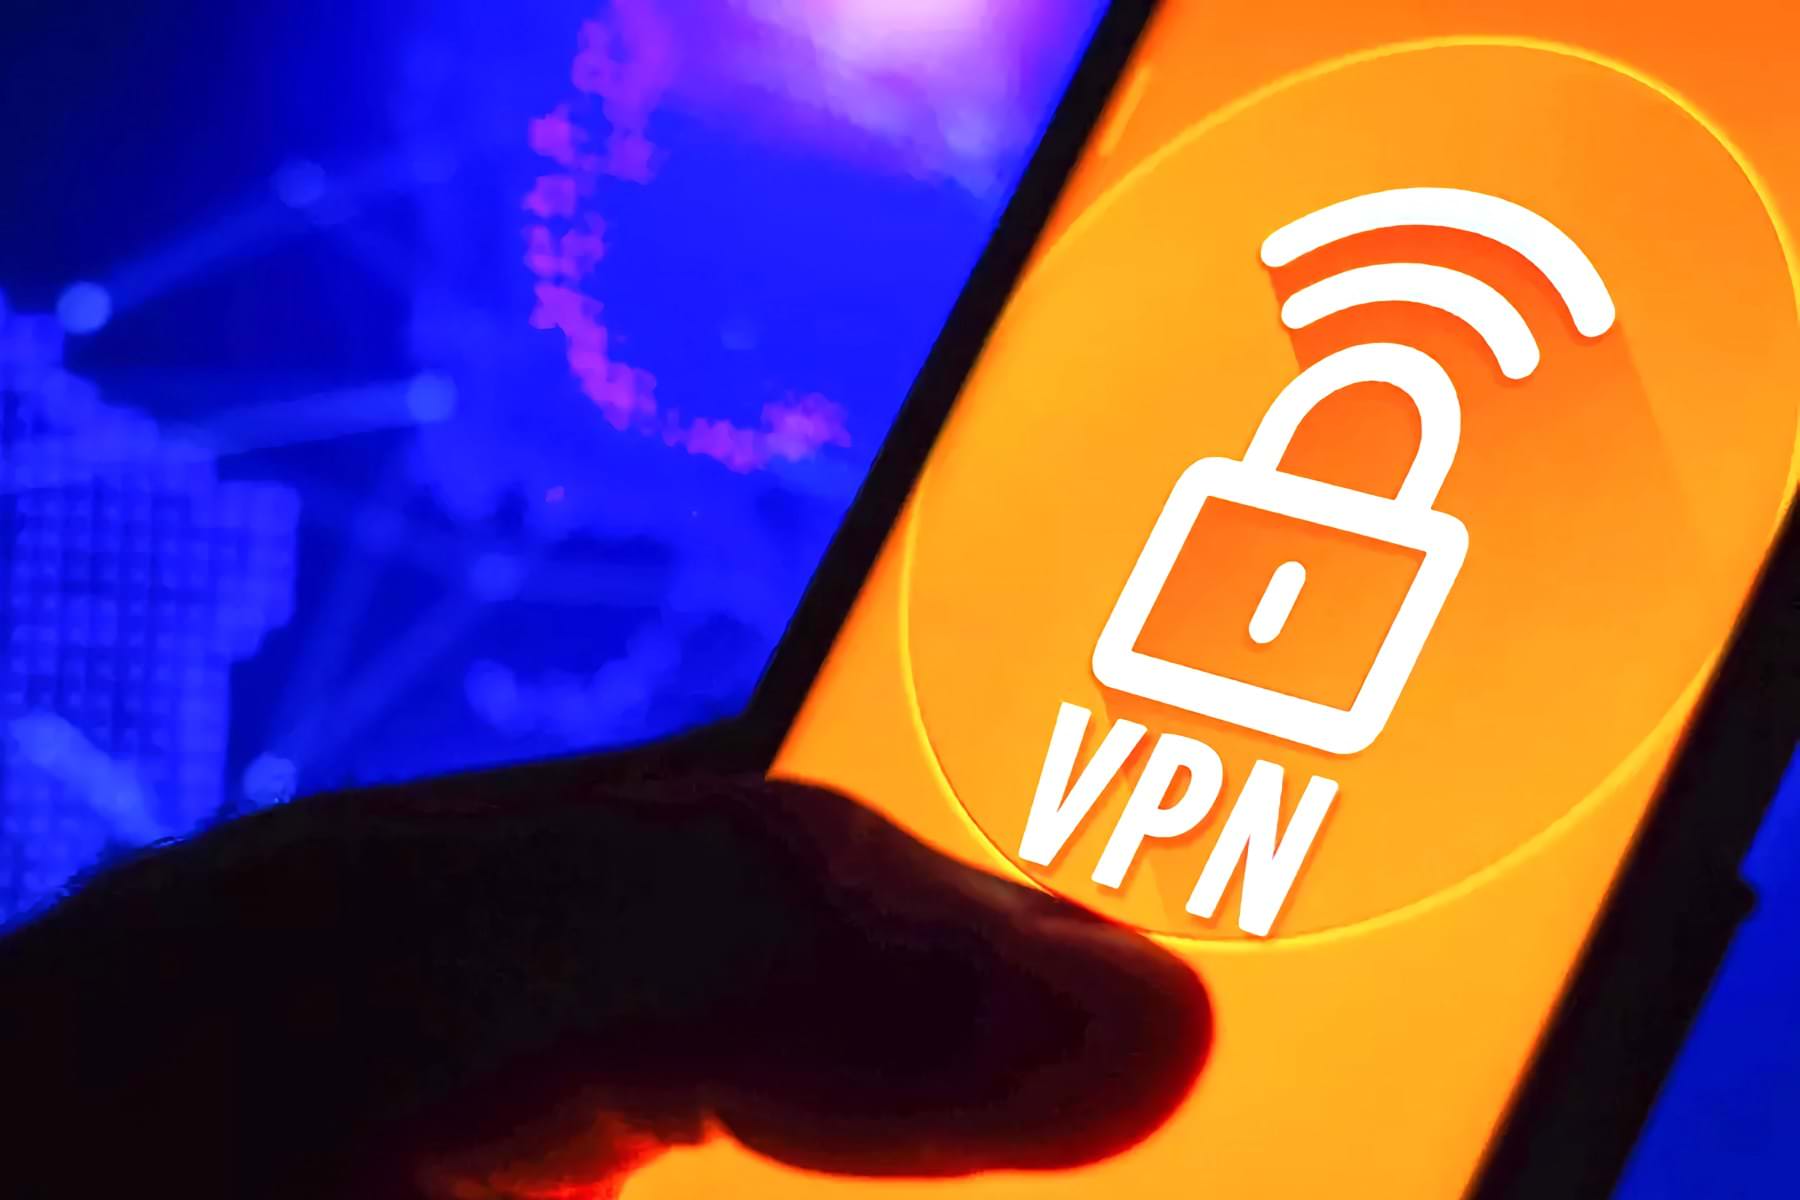 Россия создала национальный VPN для доступа к запрещенным сайтам. Он бесплатен для всех